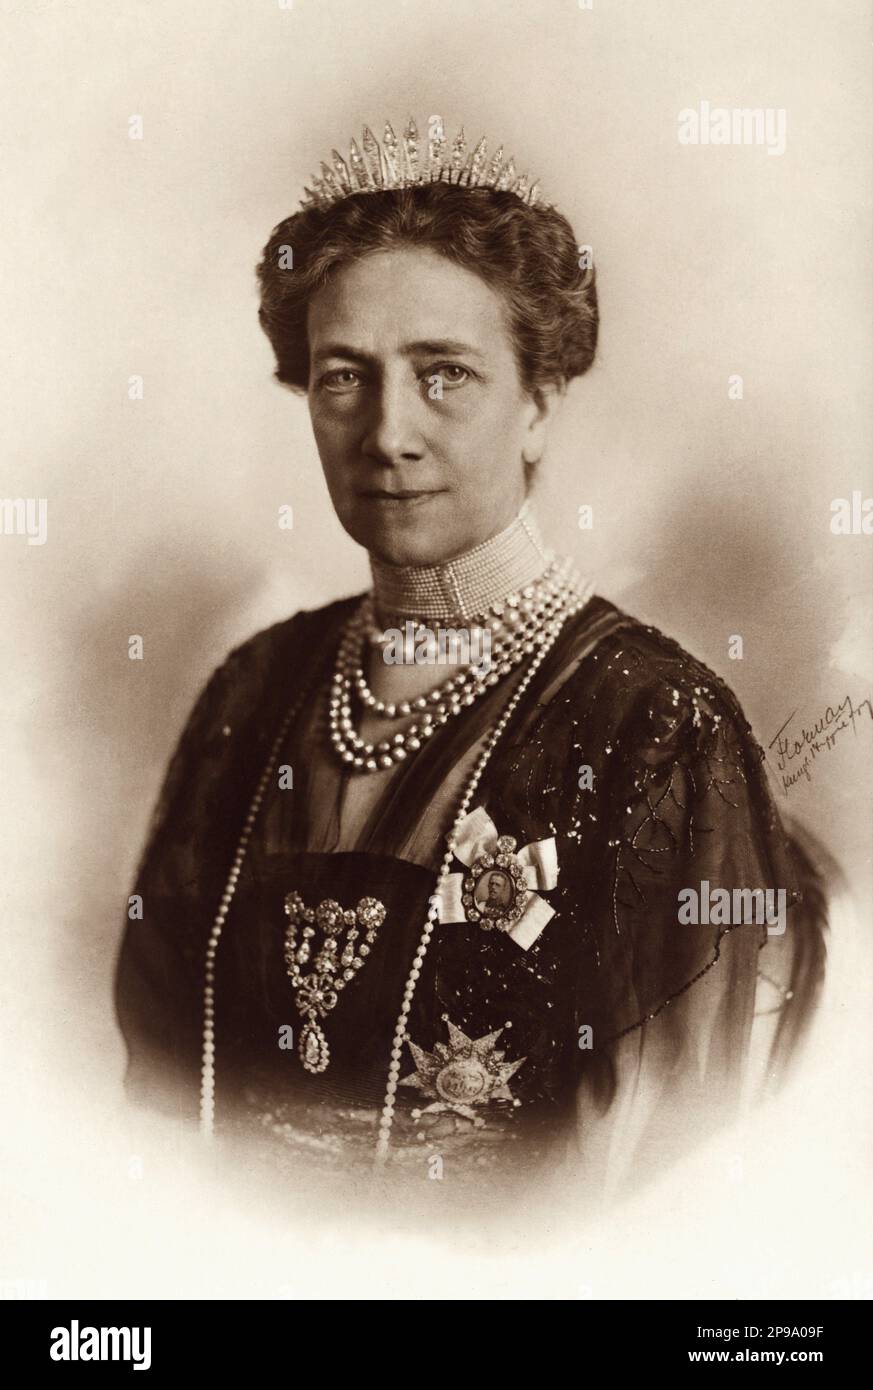 1920 : Regina VITTORIA di SVEZIA ( 1862 - 1930 ), principessa di BADEN , sposata con il re GUSTAF V di SVEZIA BERNADOTTE ( 1858 - 1950 ) . Suo padre era il Granduca Federico i di Baden (figlio della Principessa Sophie di Svezia) e la Principessa Louise di Prussia (figlia unica di Guglielmo i di Germania e Augusta di Saxe-Weimar) - REGINA - RE - NOBILTÀ - Nobiltà - REALI - ROYALTY - ritratto - ritrato - collana - collana - Casa DI BERNADOTTE - SVEZIA - NORVEGIA - royalty - nobili - nobiltà - FAMIGLIA REALE - FAMIGLIA - Gustaf - Gustavo - Gustav - Regina Vittoria di Svezia - chignon - coll Foto Stock